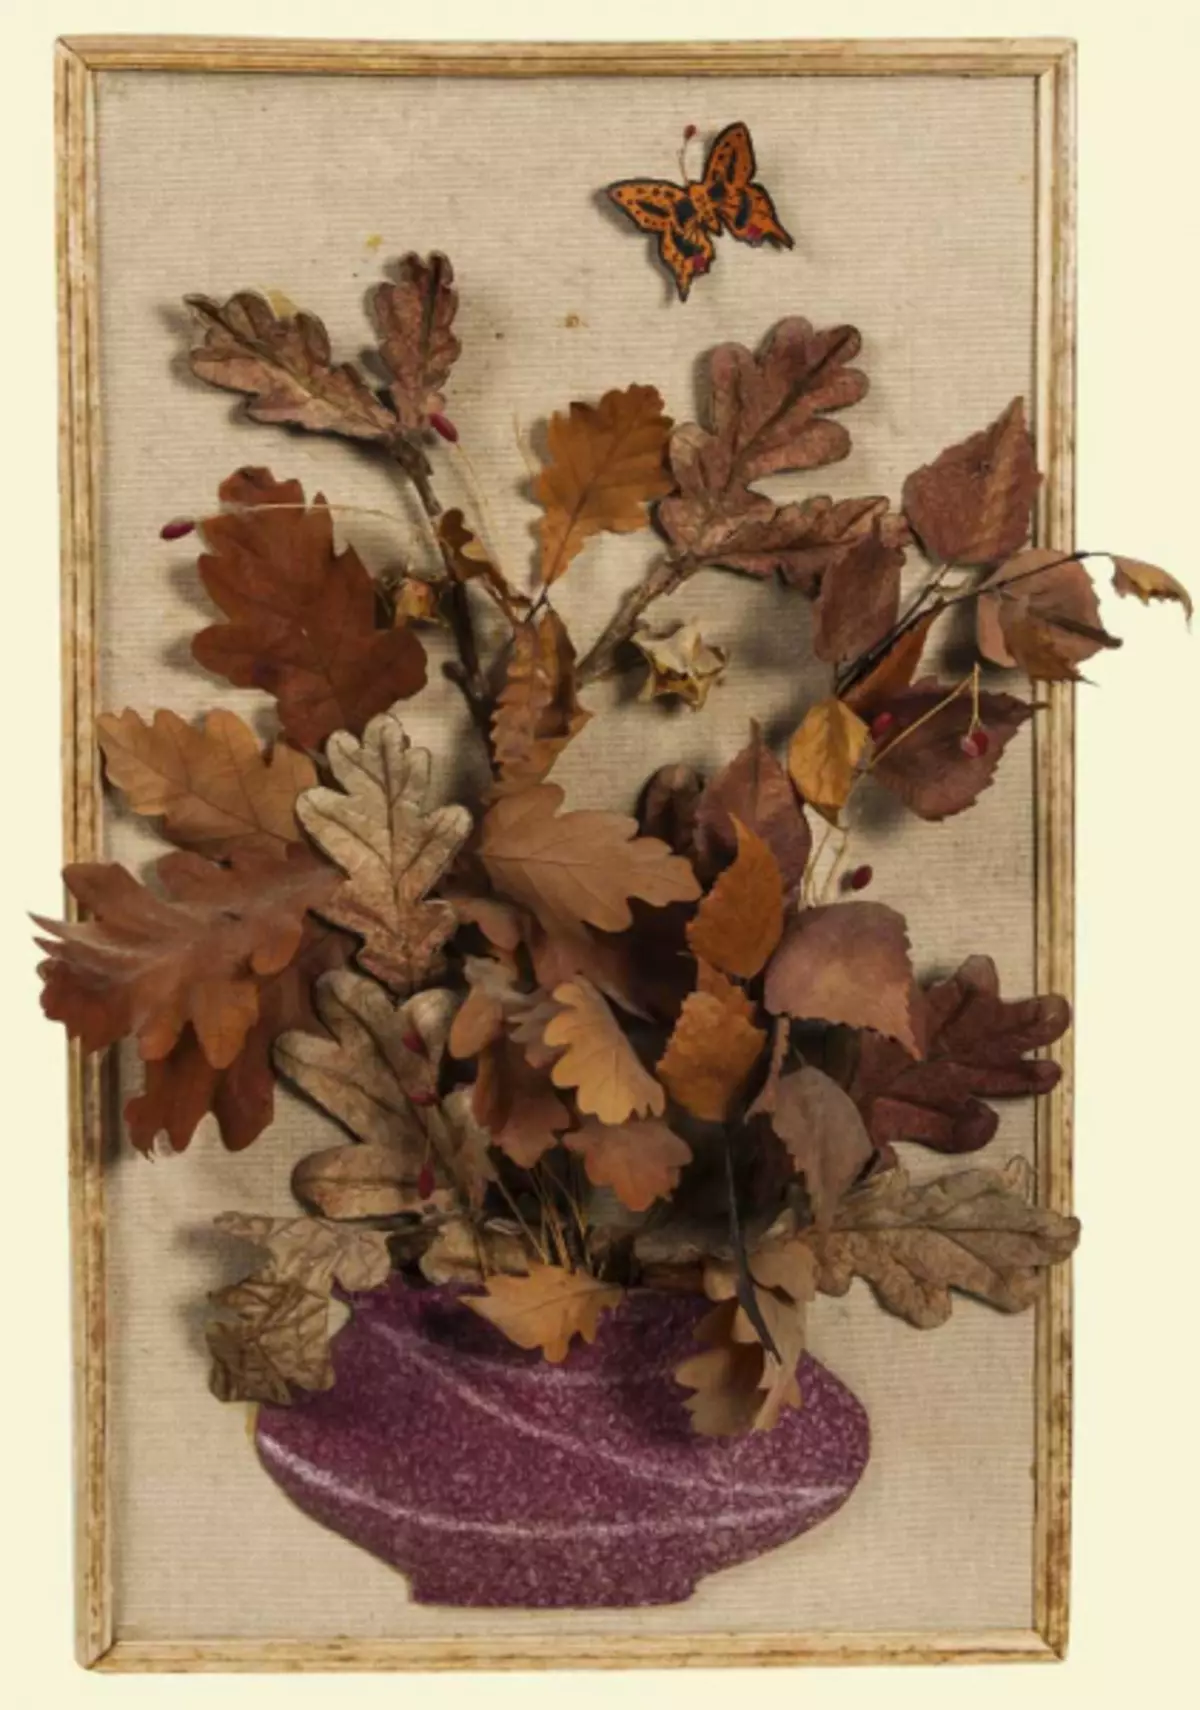 Skydas iš natūralios medžiagos rudens tema su nuotrauka